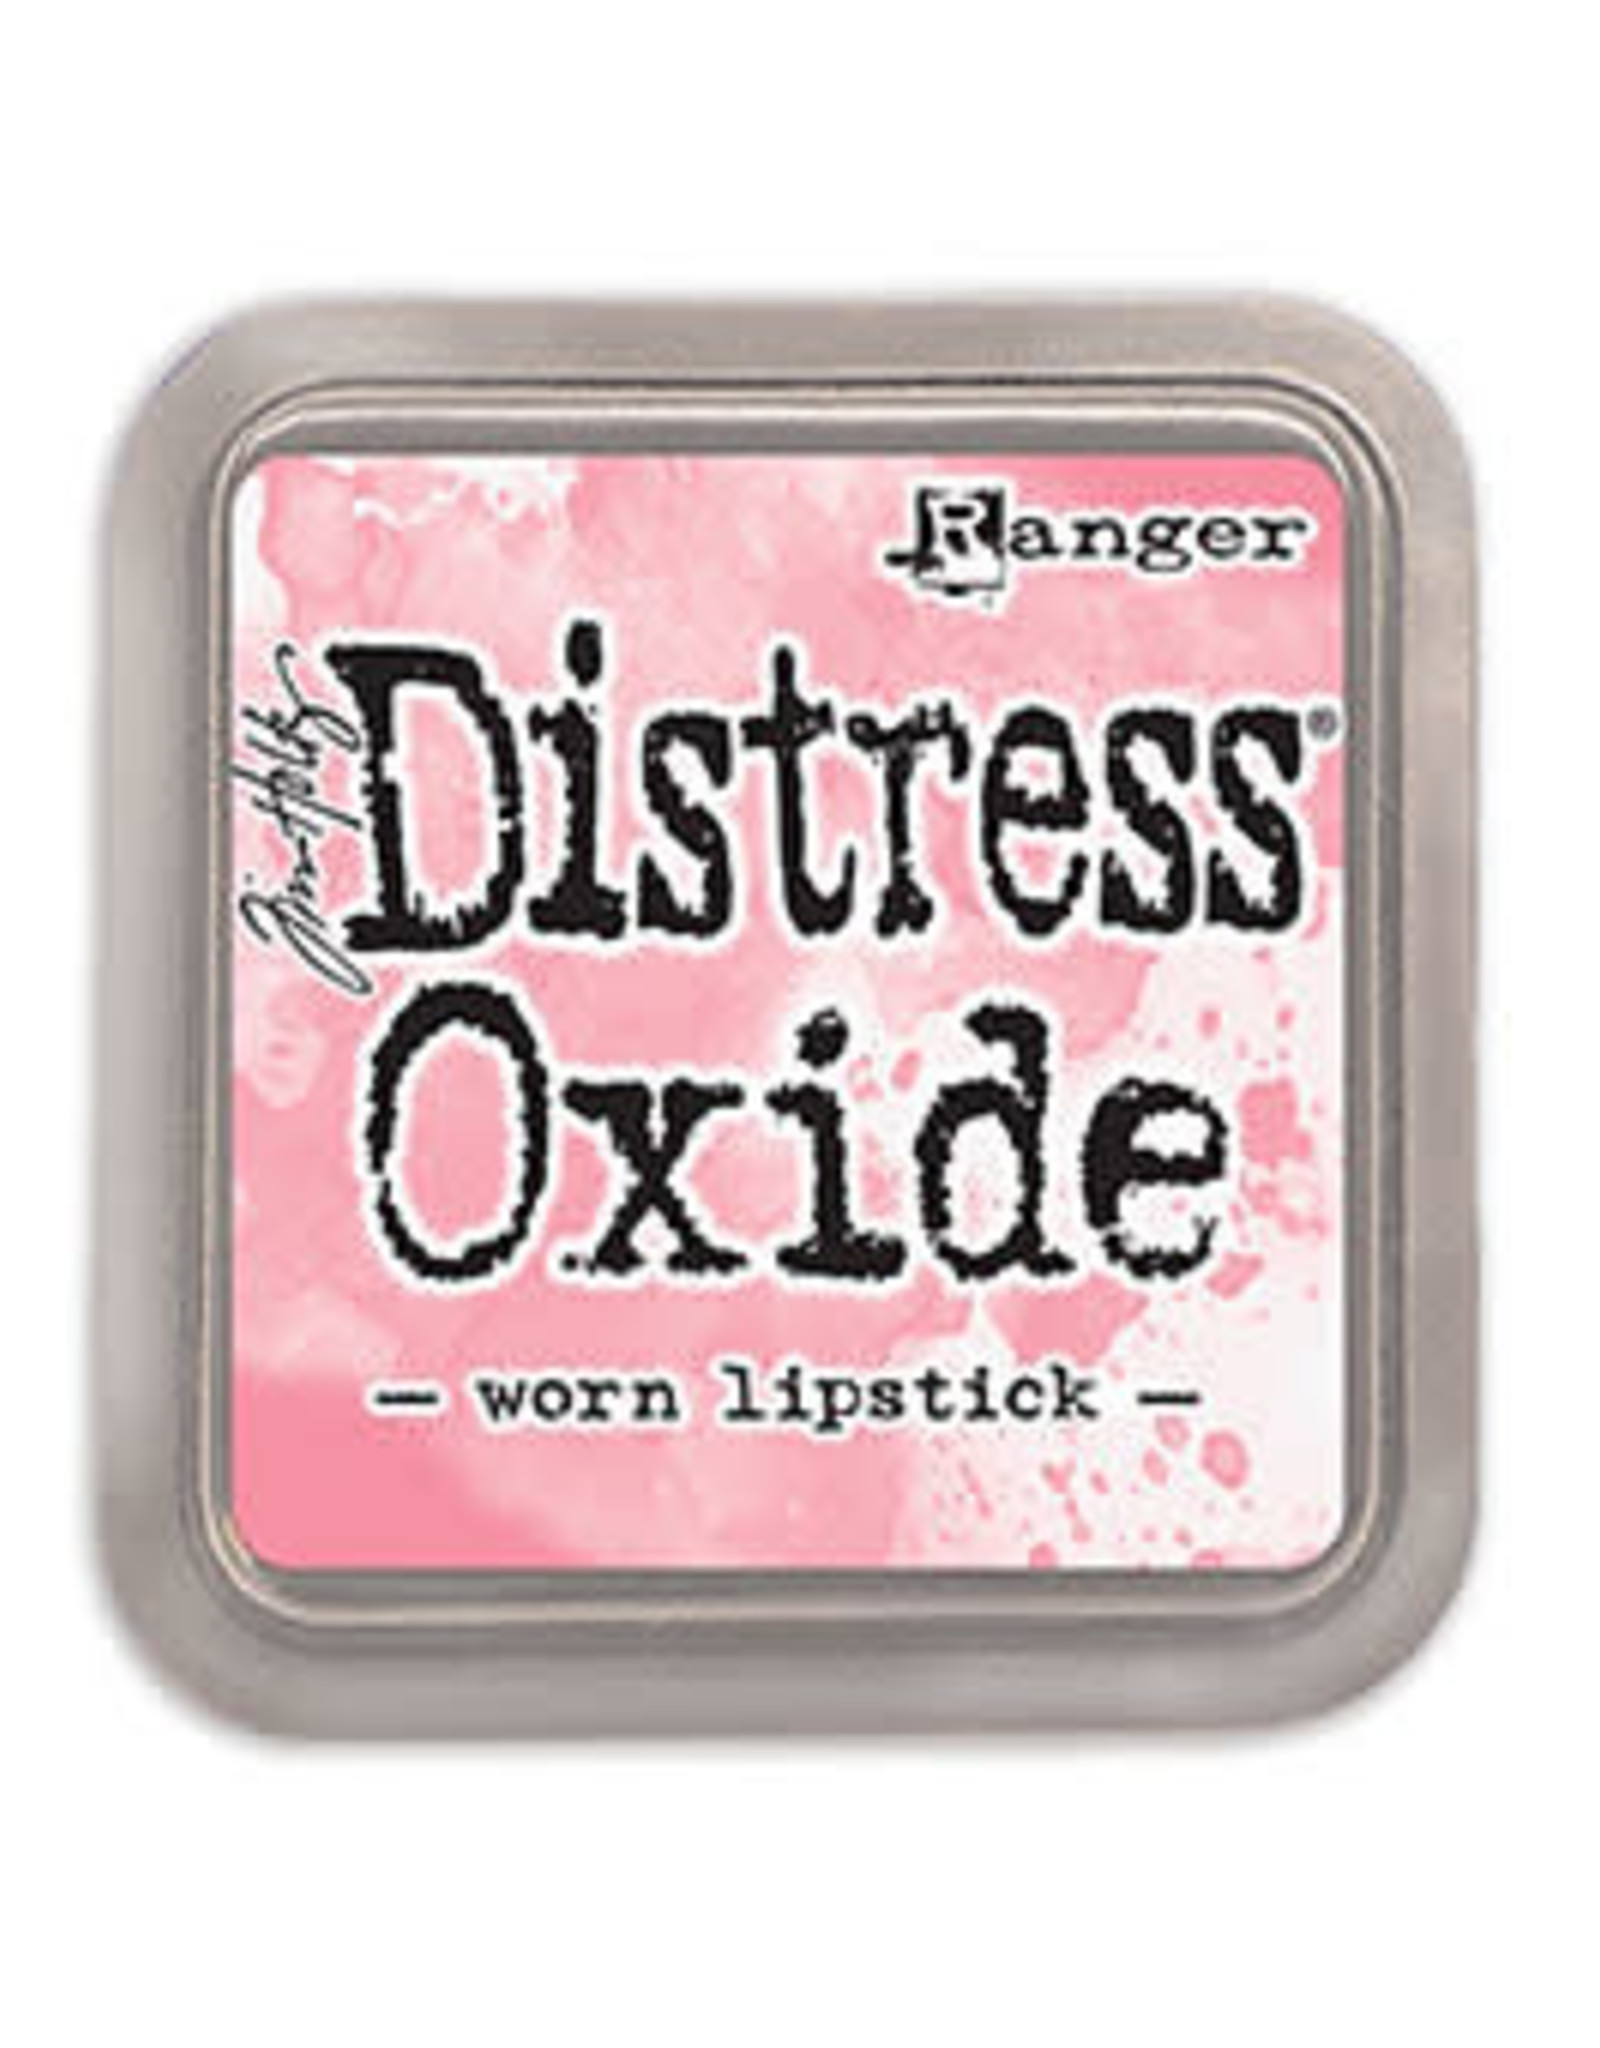 Tim Holtz - Ranger Distress Oxide Worn Lipstick